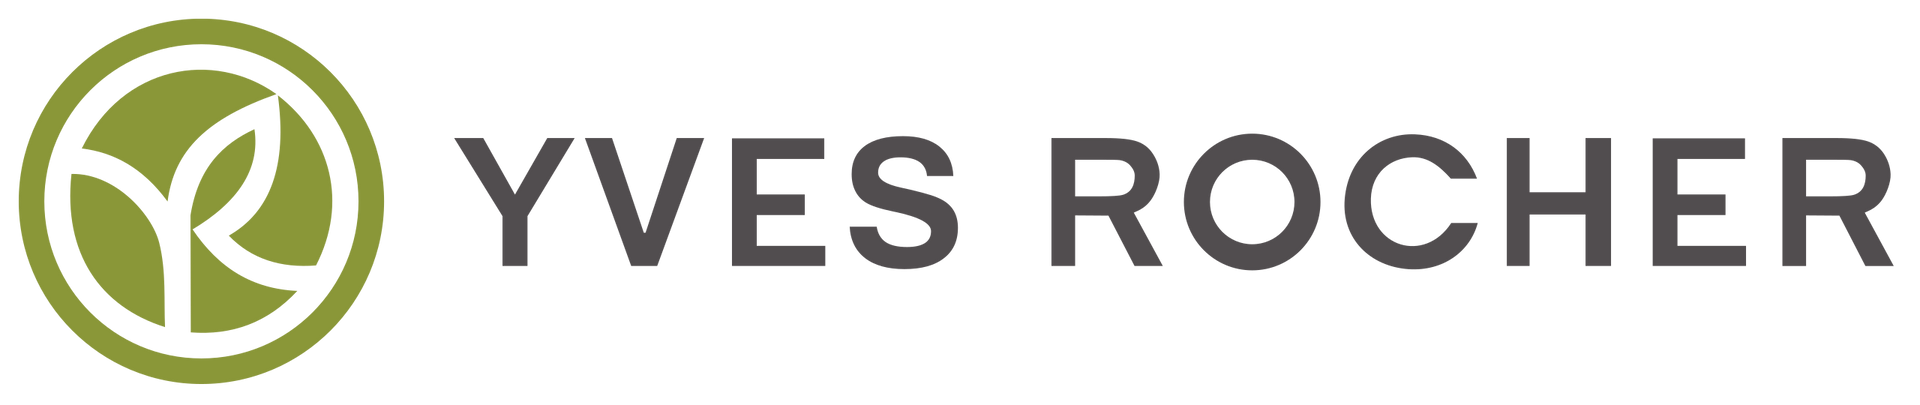 YVES ROCHER logo empresa colaboradora con SecuriBath